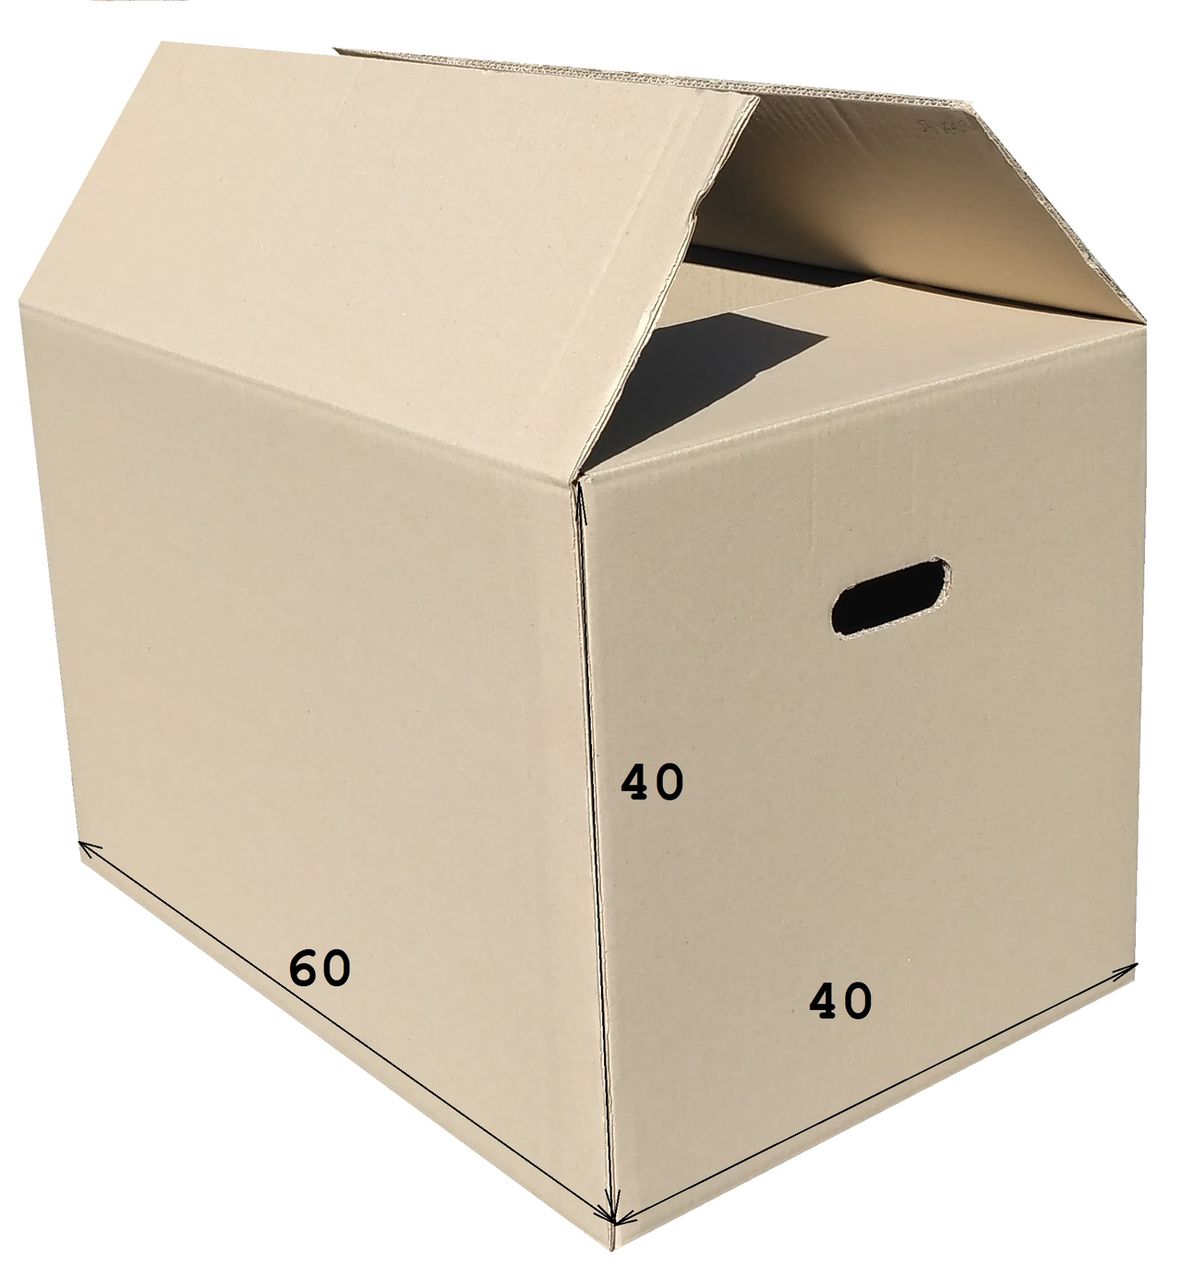  короба, коробки для переезда прочные 40х60х40 см